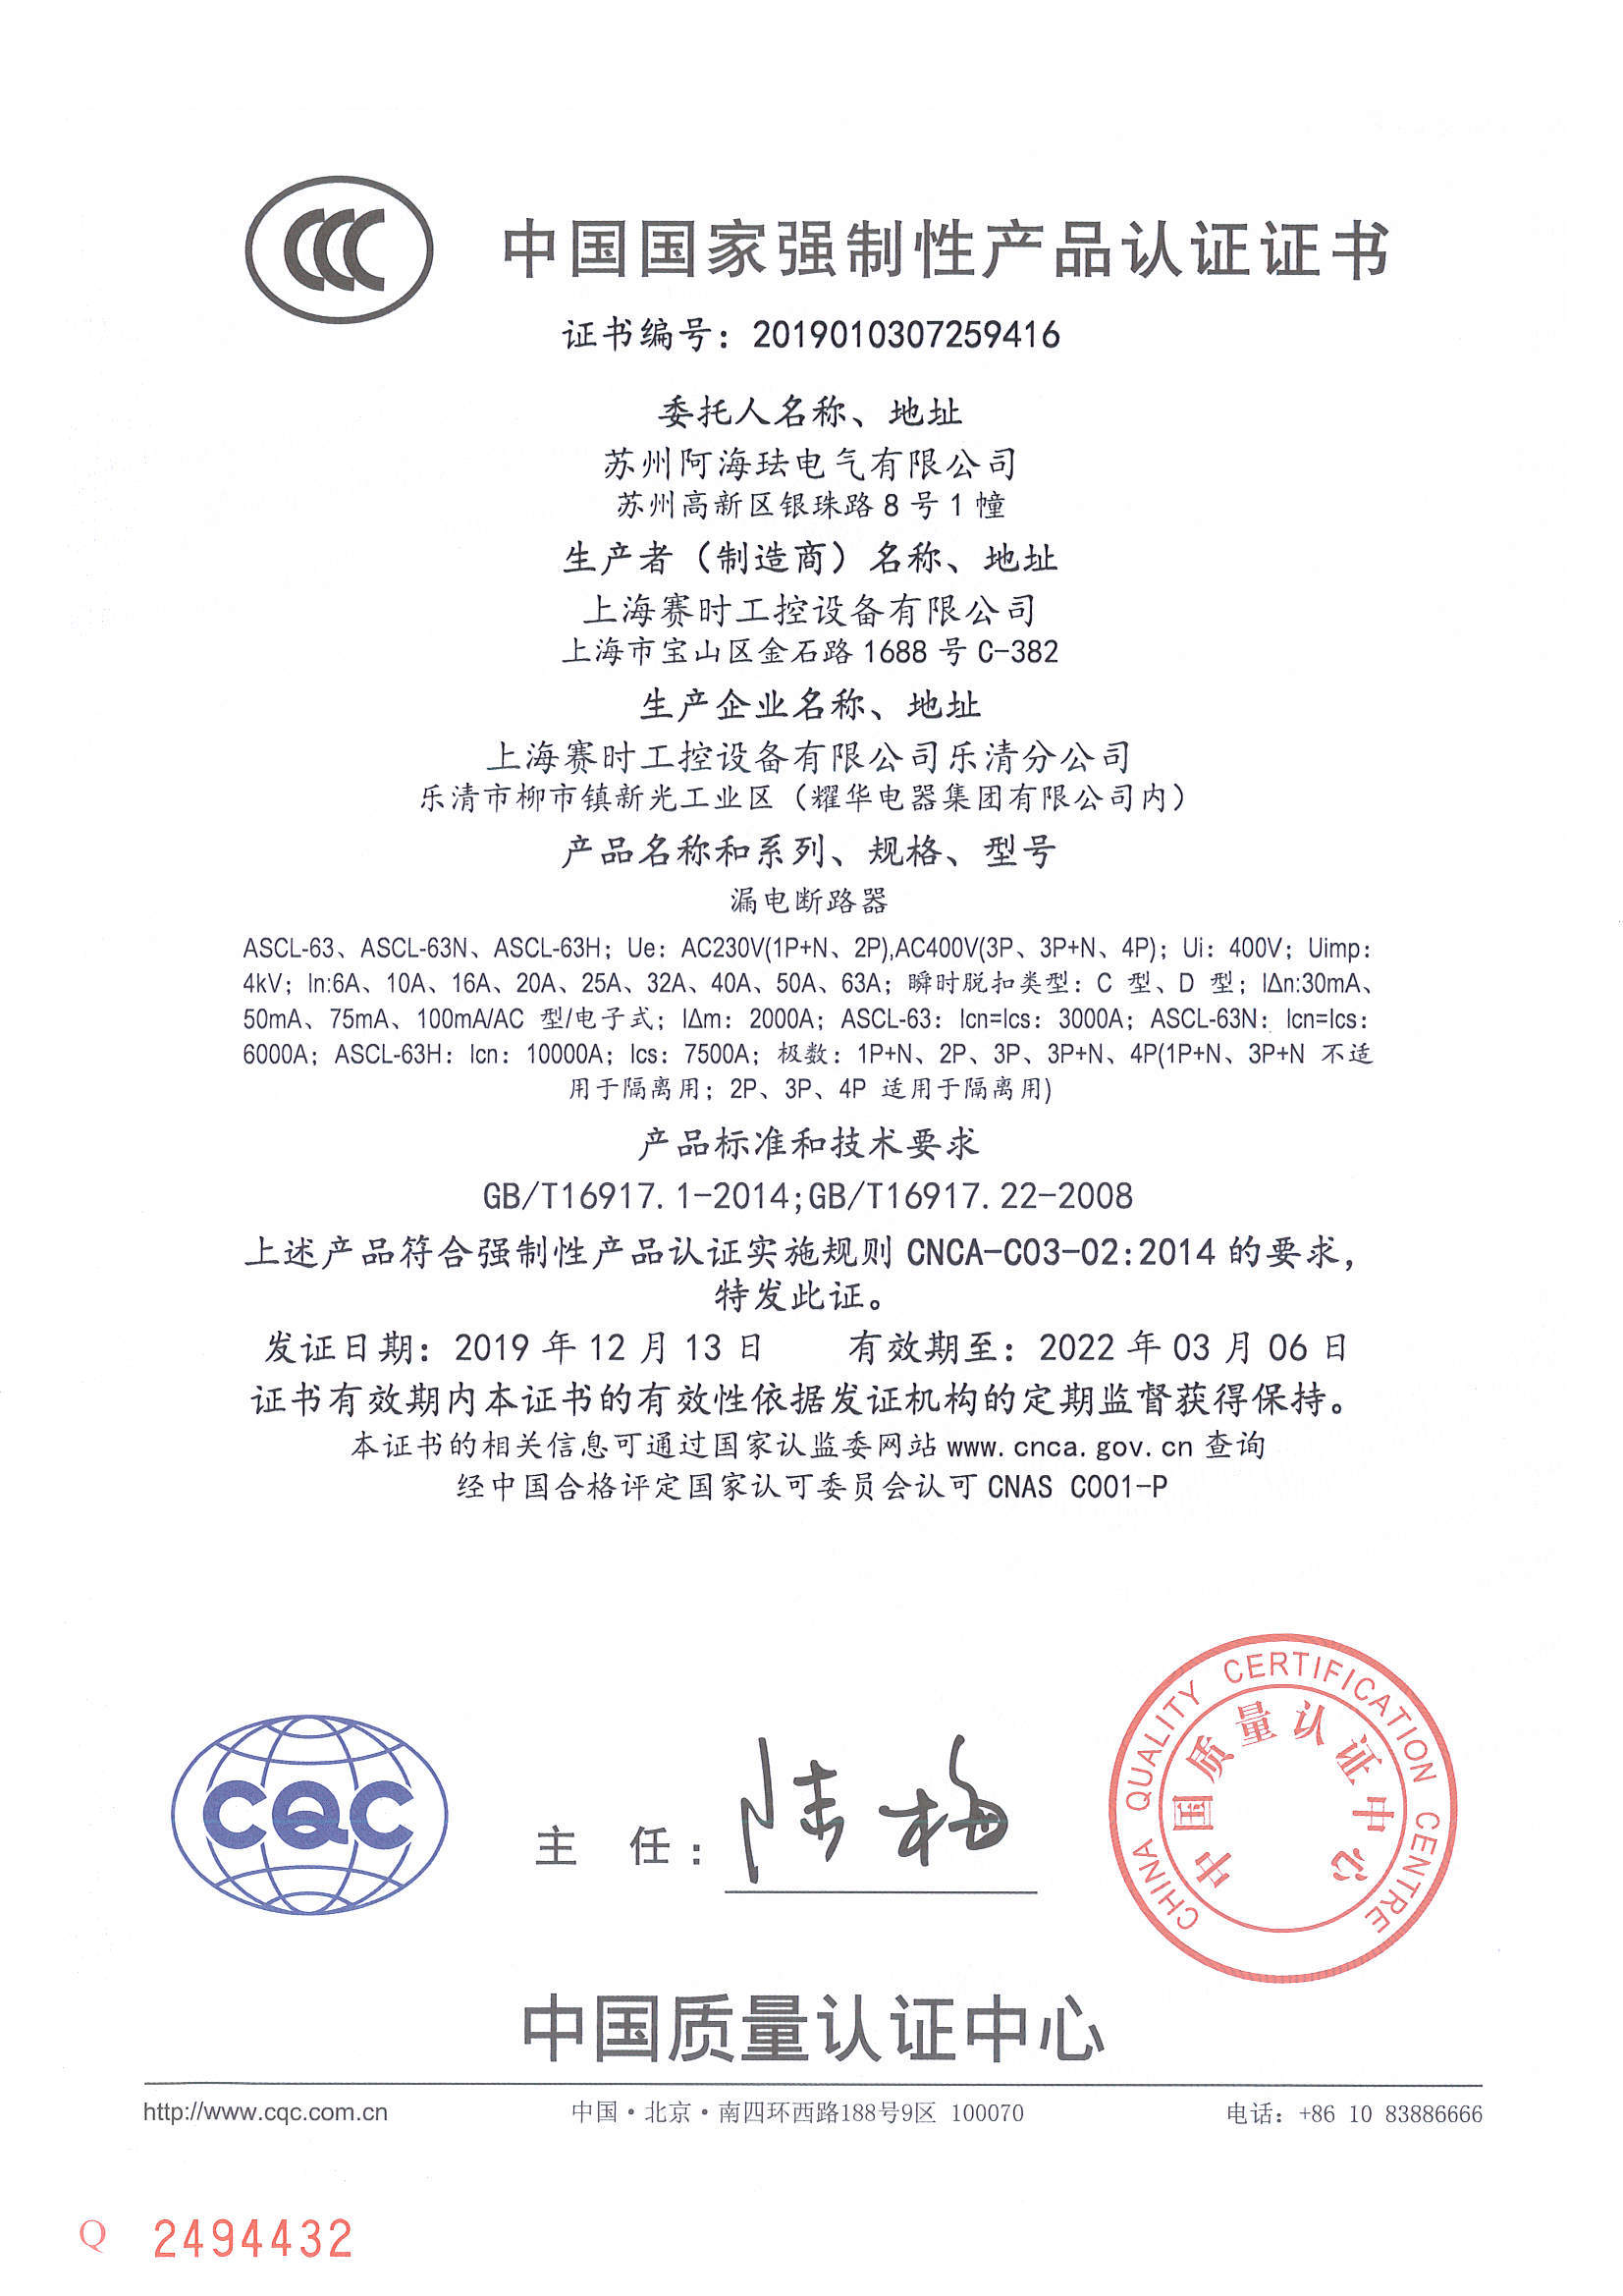 ASCL-63 CCC Certificate